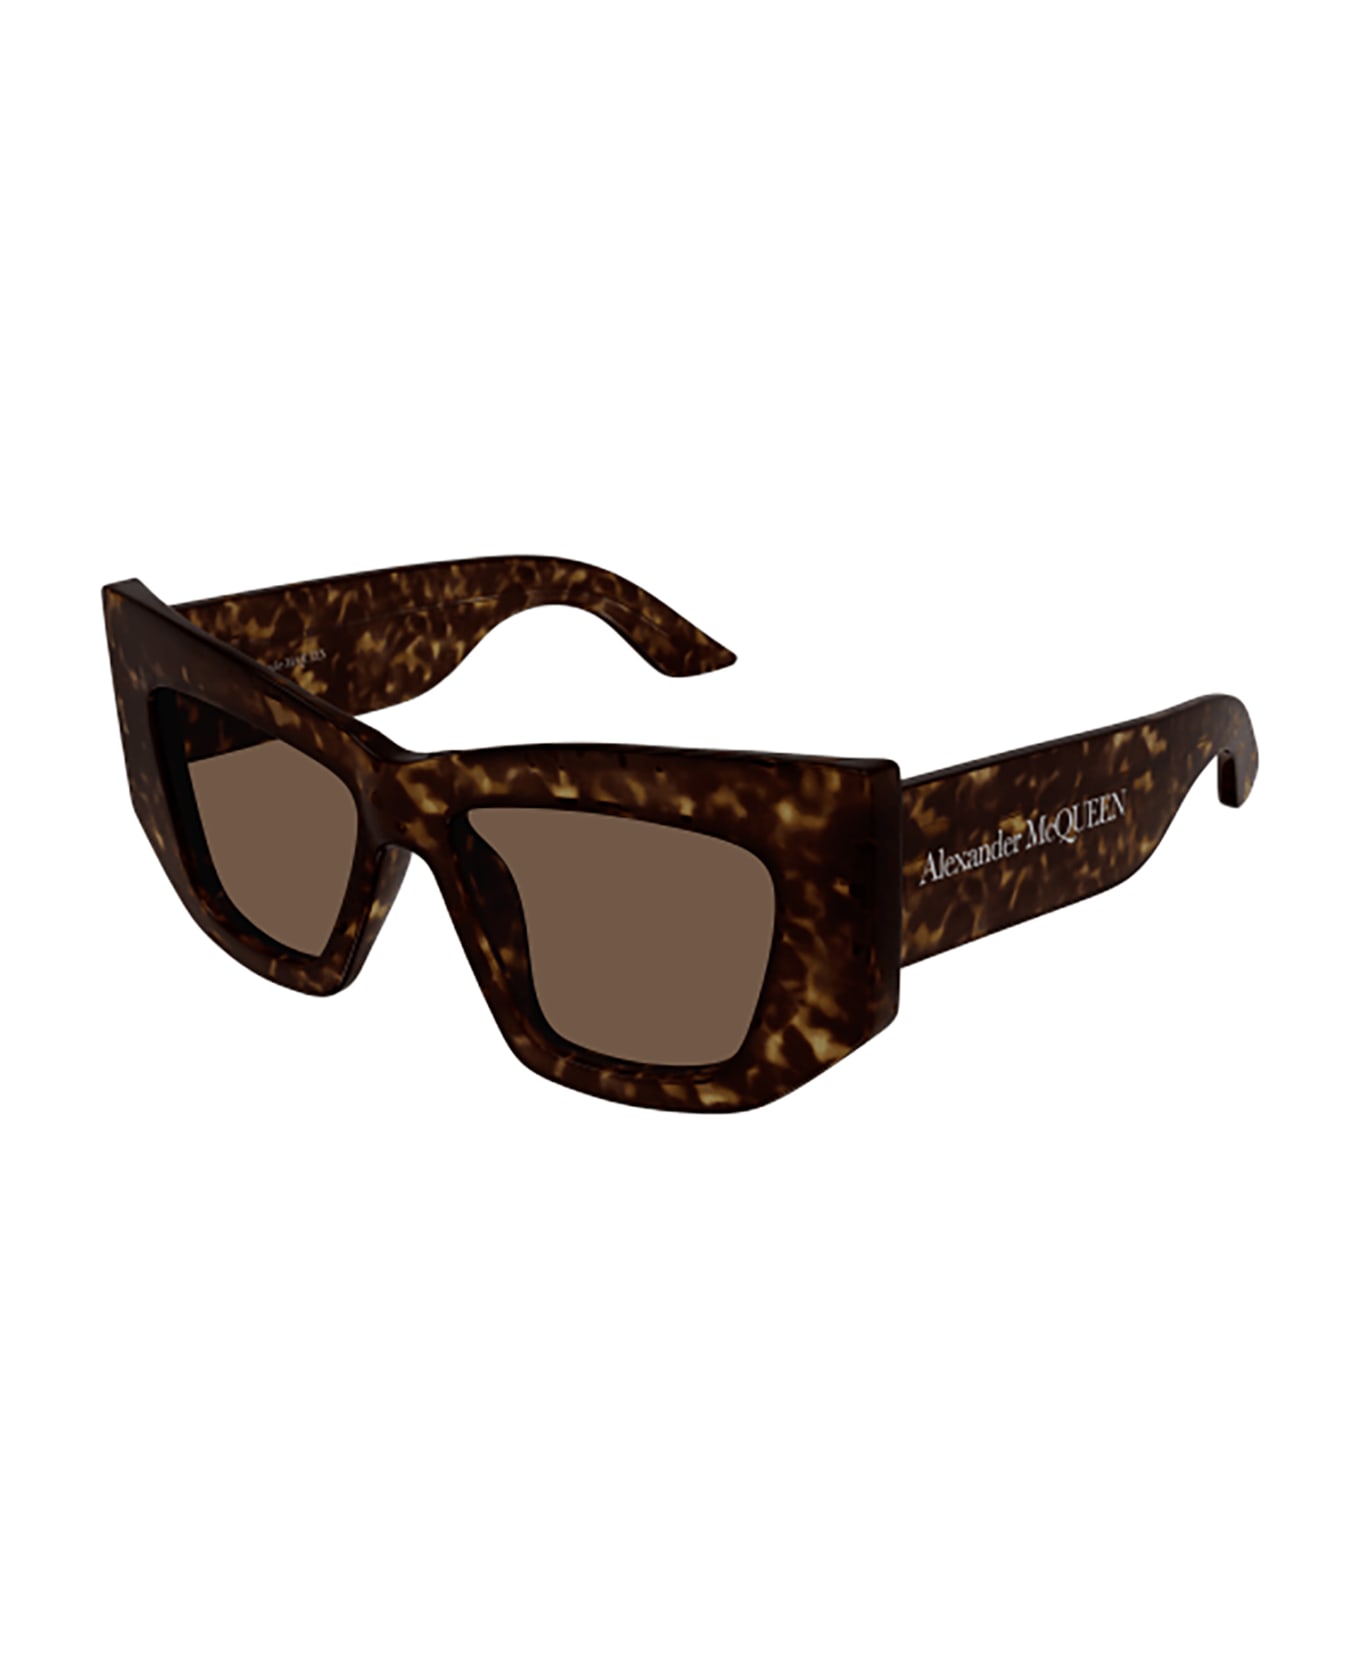 Alexander McQueen Eyewear AM0448S Sunglasses - Havana Havana Brown